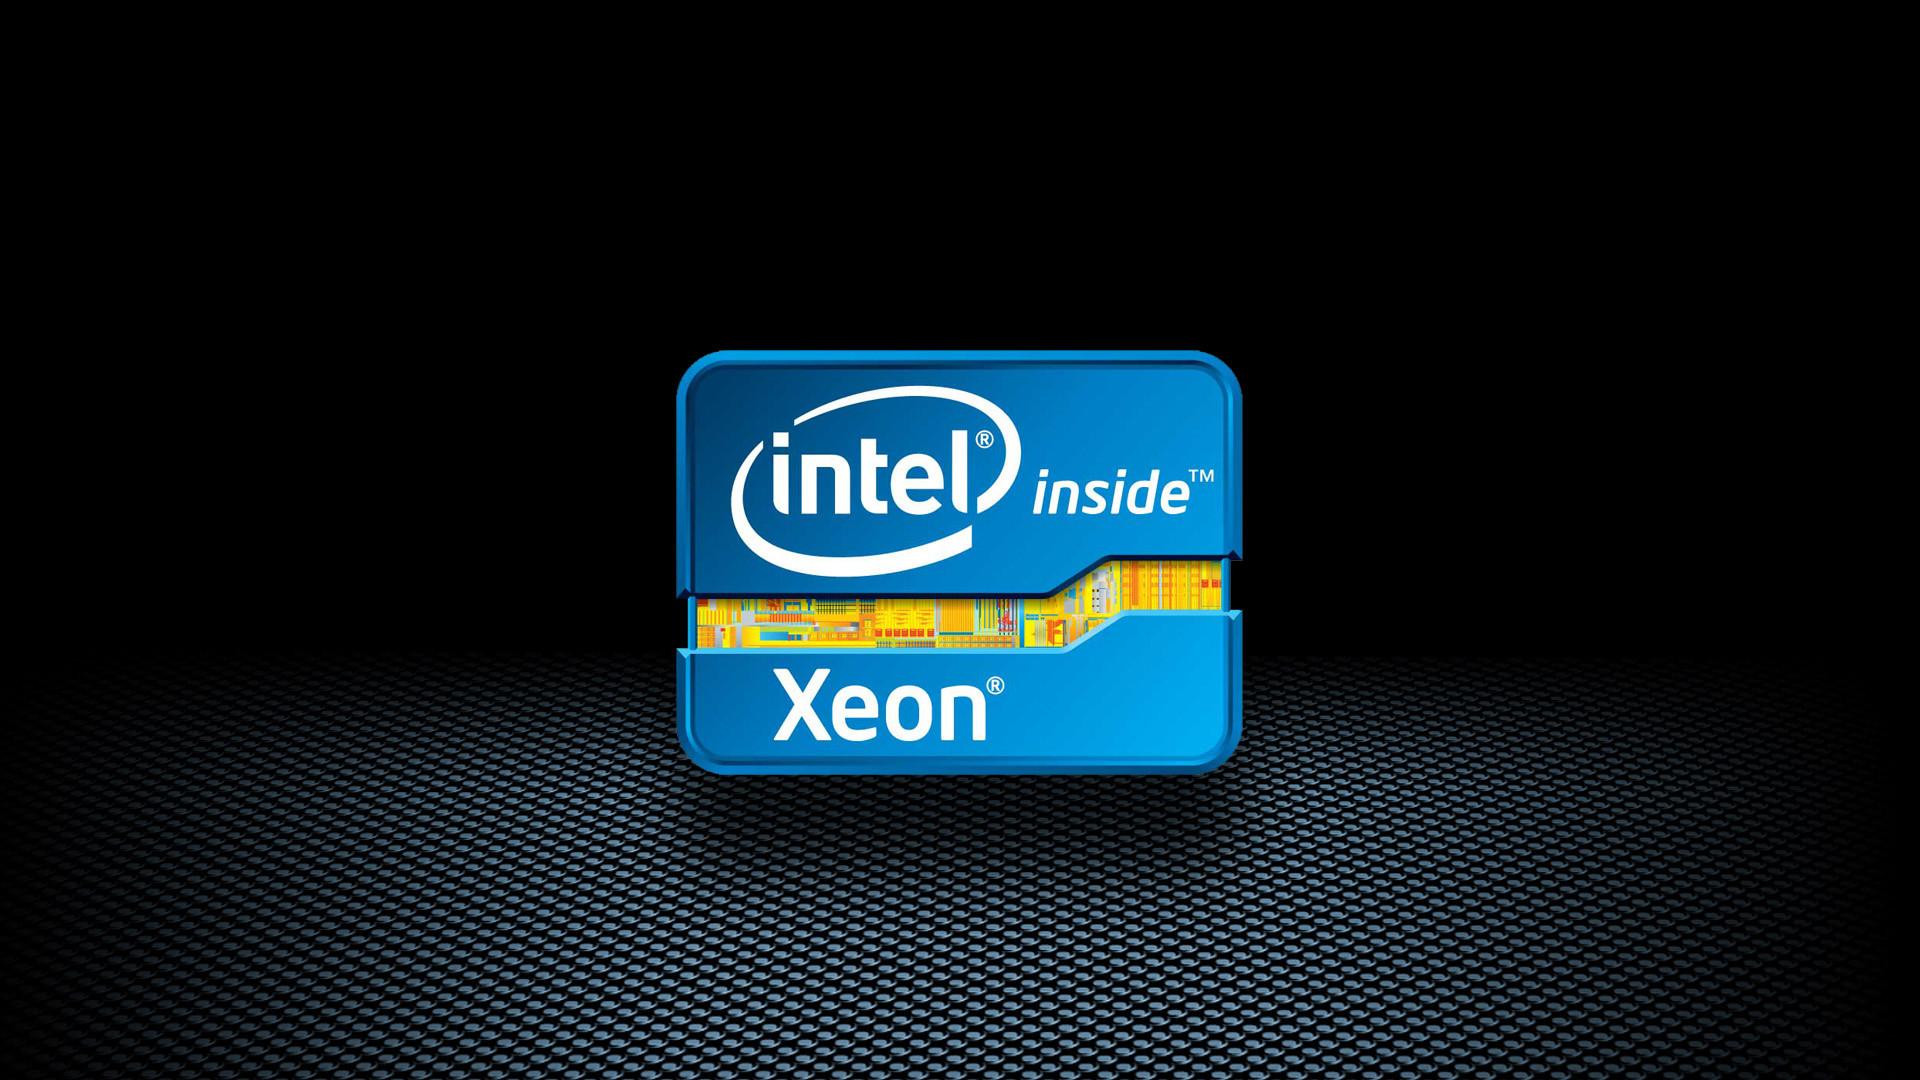 1920x1080 Hogans Intel Quad Xeon I5 I7 Wallpapers 1920 x 1080 1920 x 